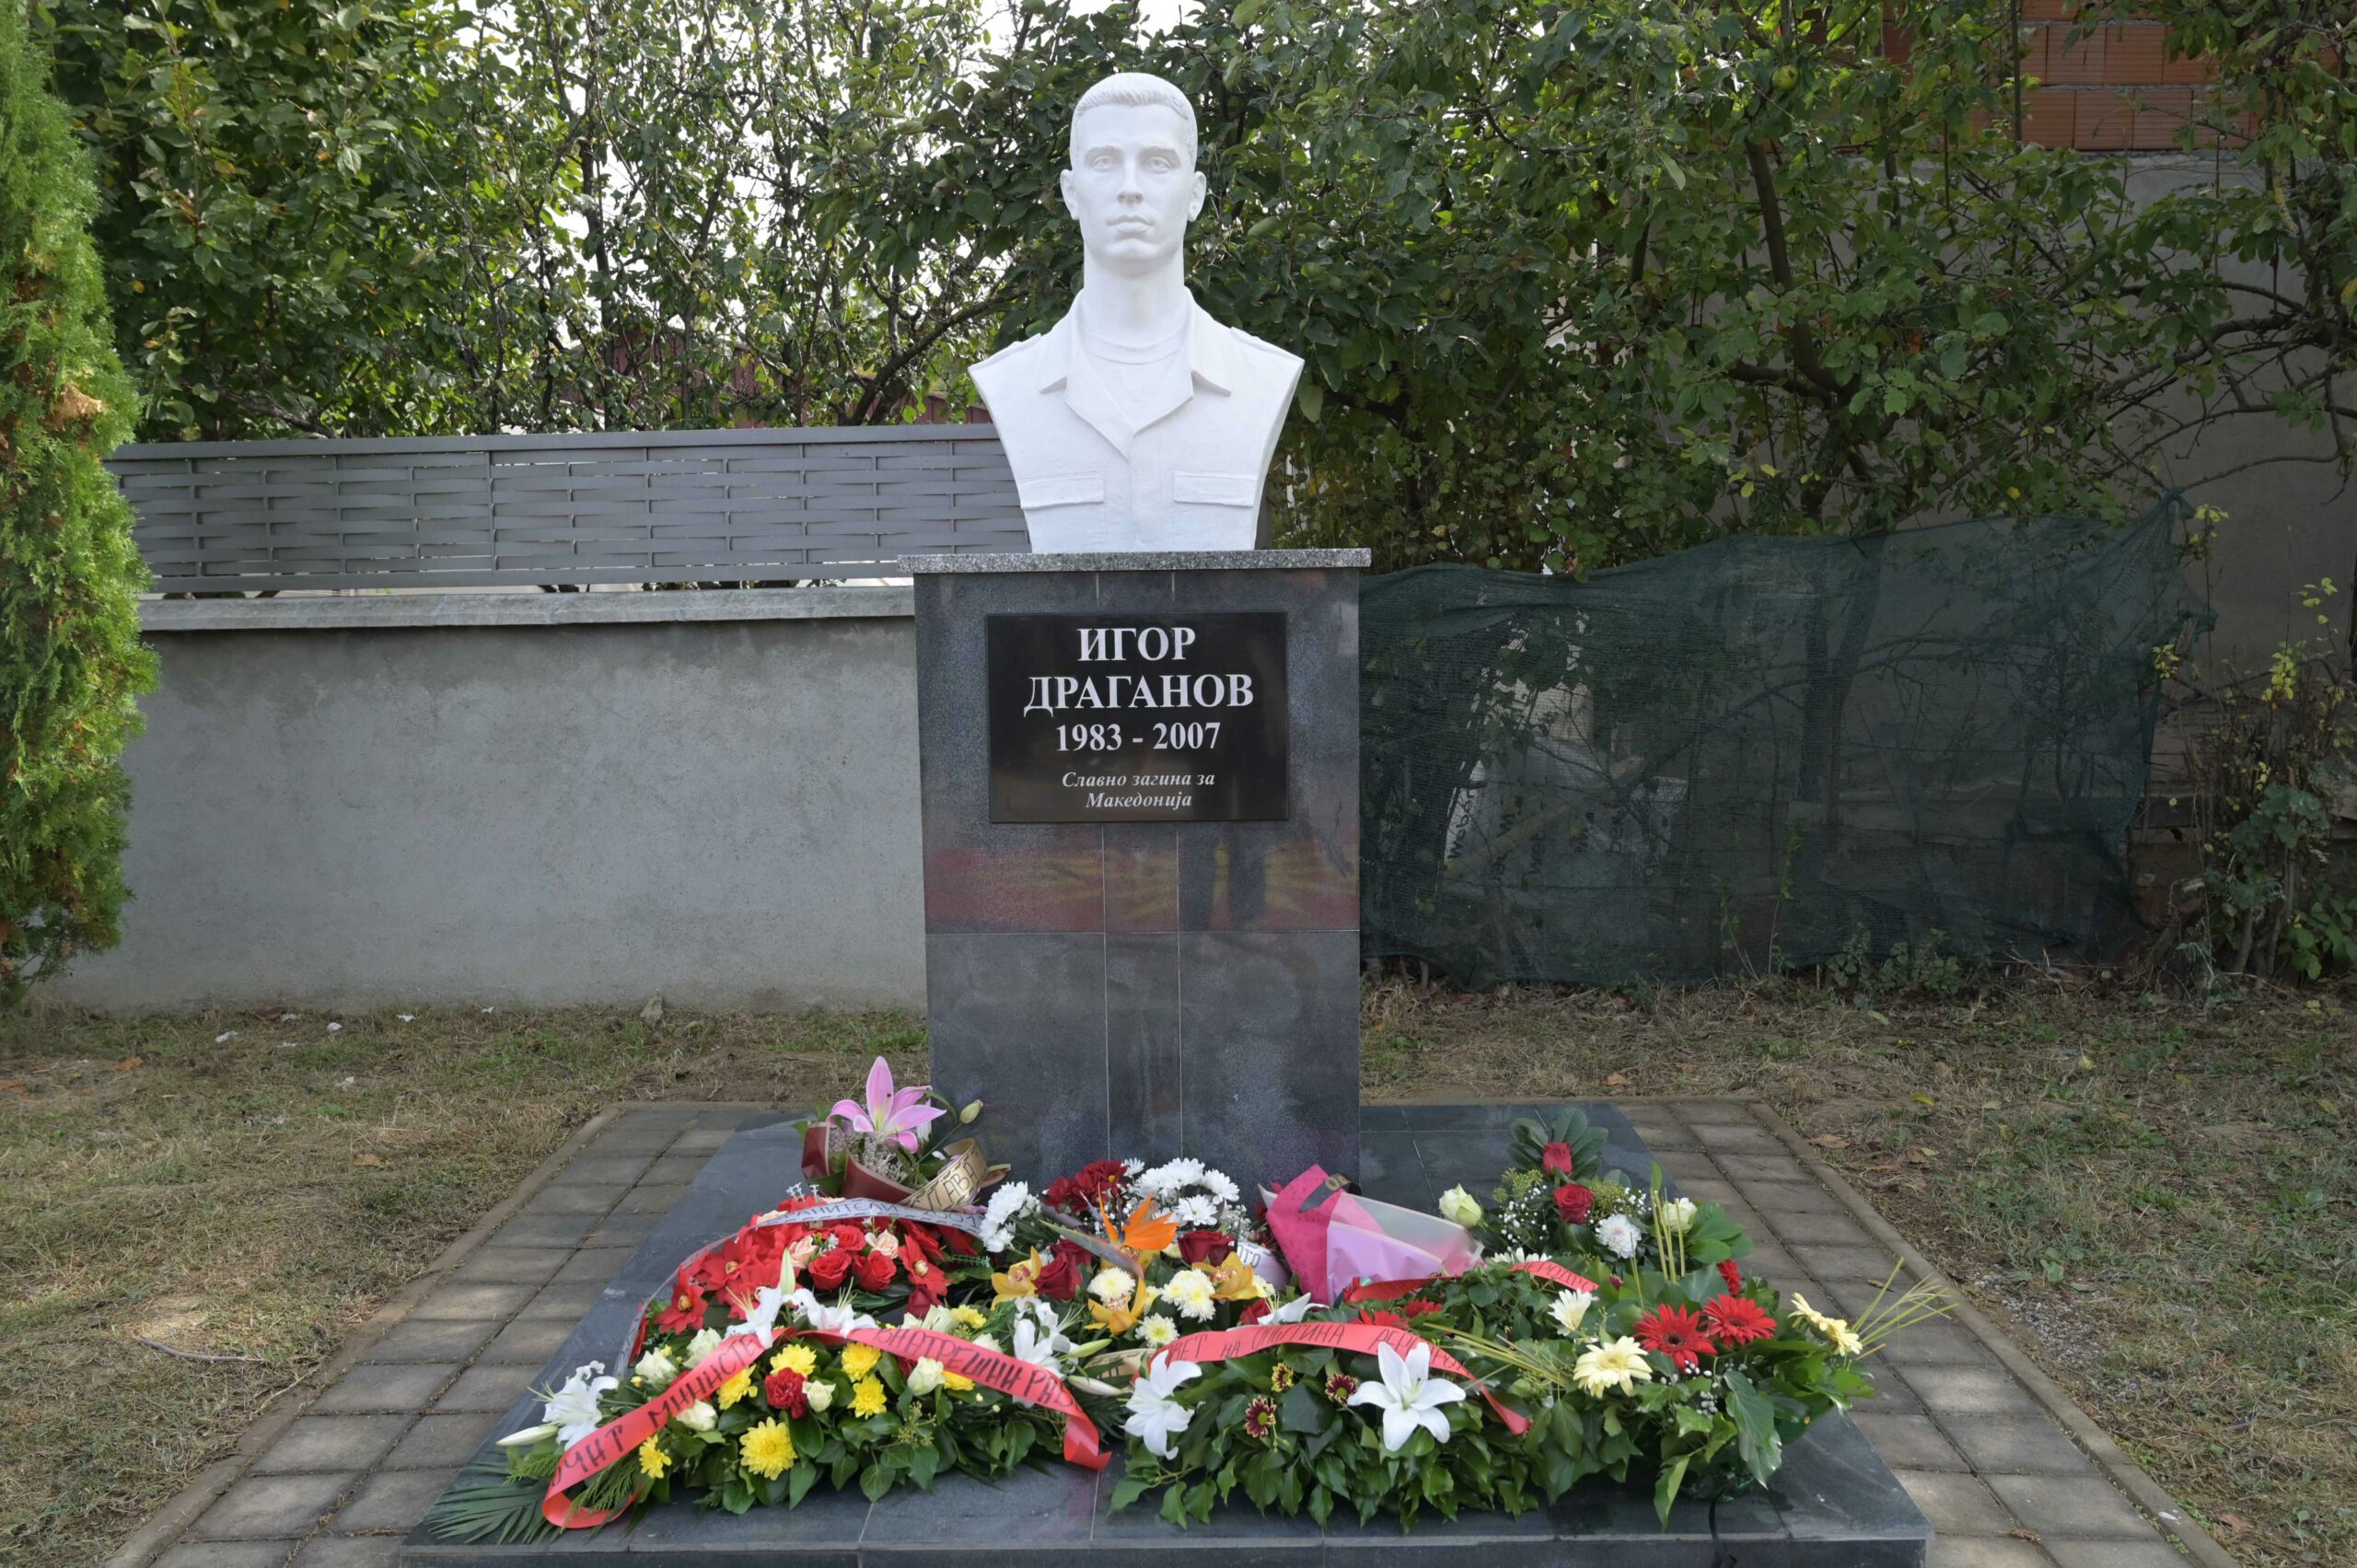 Спасовски на откривање спомен обележје во чест на Игор Драганов: Херојскиот чин никогаш нема да биде заборавен